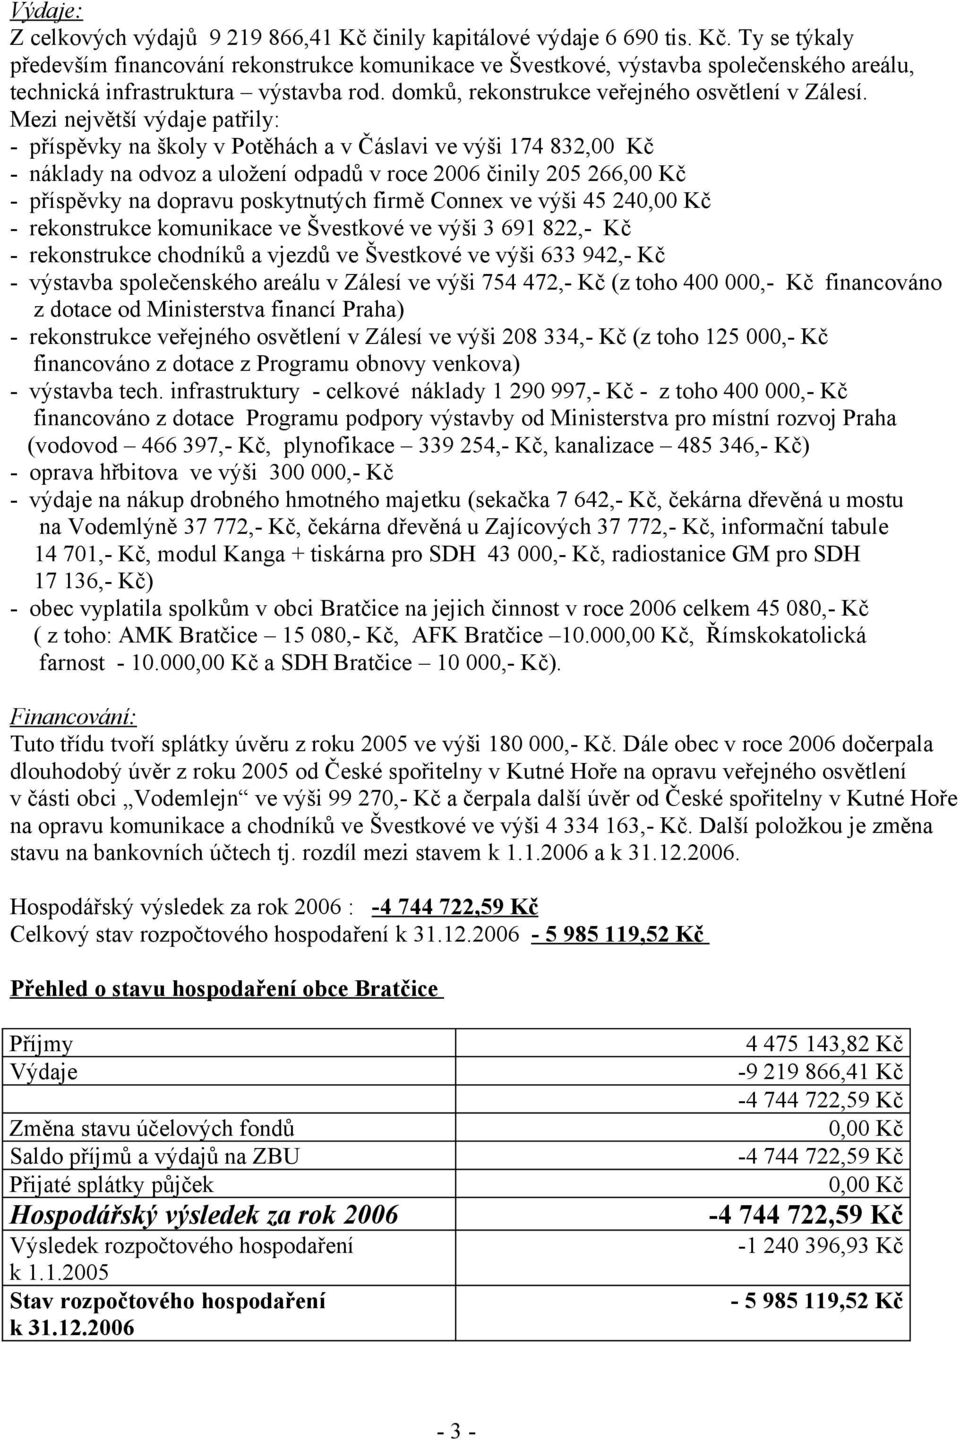 Mezi největší výdaje patřily: - příspěvky na školy v Potěhách a v Čáslavi ve výši 174 832,00 Kč - náklady na odvoz a uložení odpadů v roce 2006 činily 205 266,00 Kč - příspěvky na dopravu